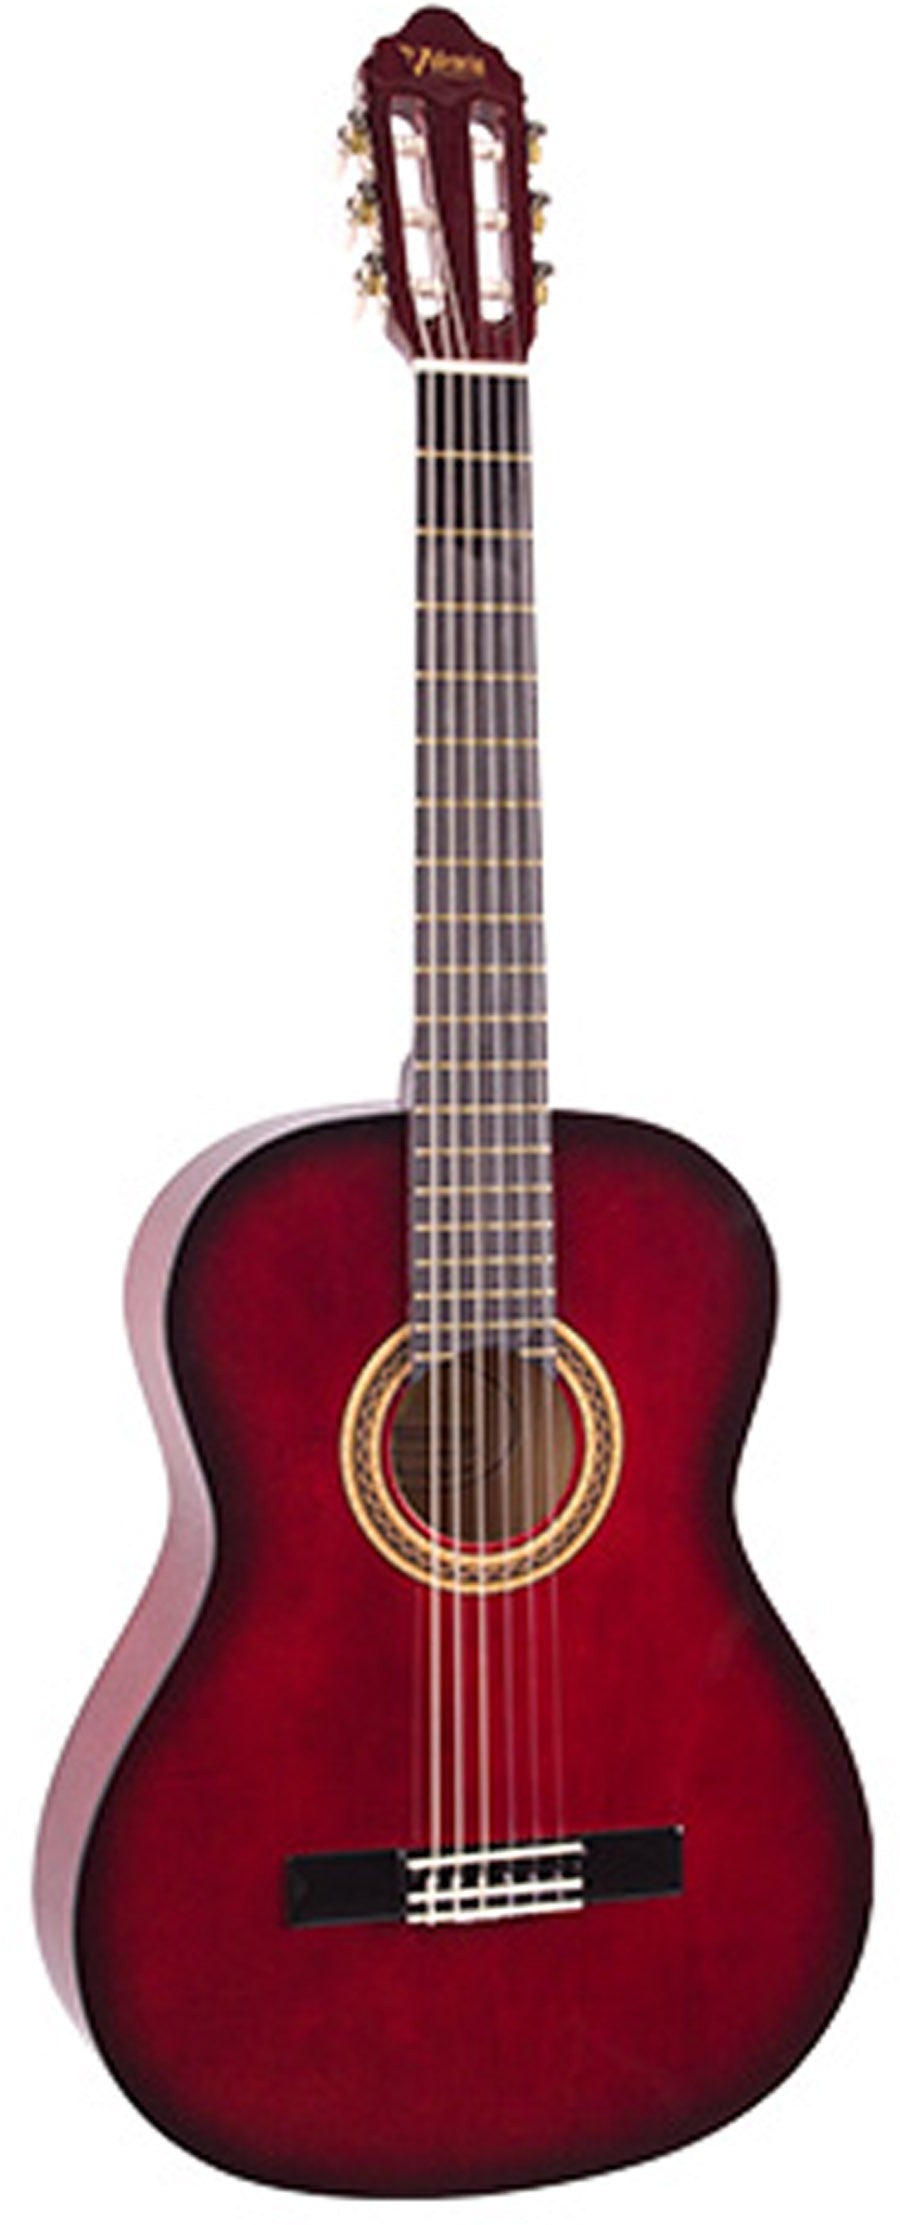 Valencia 200 Series 3/4 Size Classical Guitar - Antique Sunburst